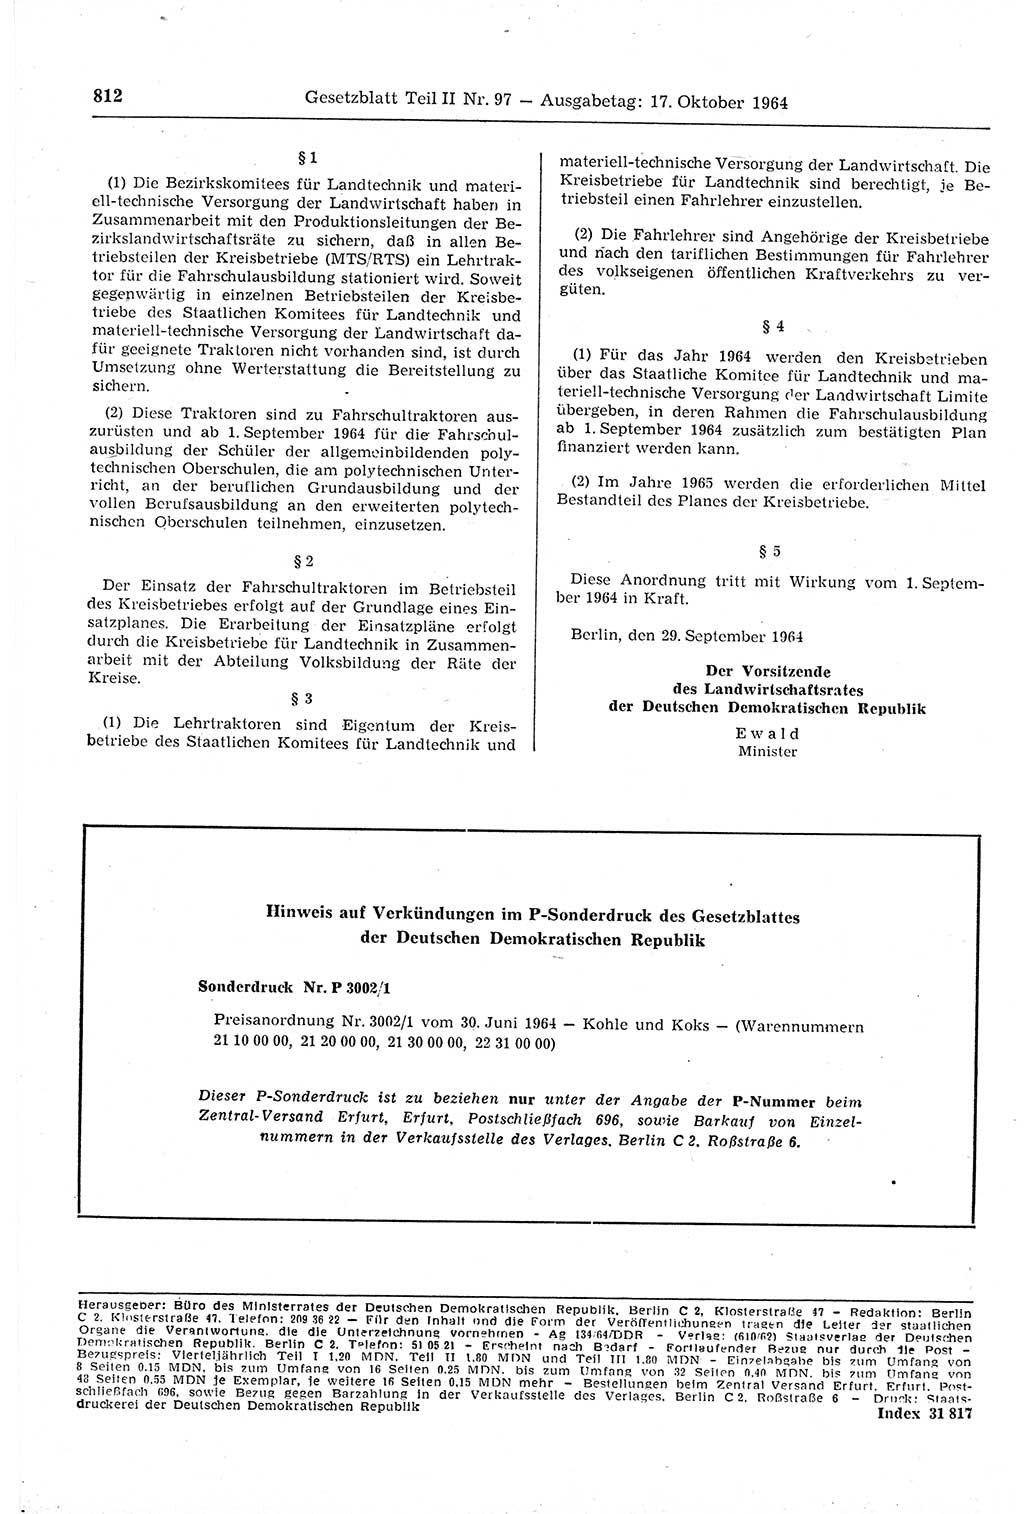 Gesetzblatt (GBl.) der Deutschen Demokratischen Republik (DDR) Teil ⅠⅠ 1964, Seite 812 (GBl. DDR ⅠⅠ 1964, S. 812)